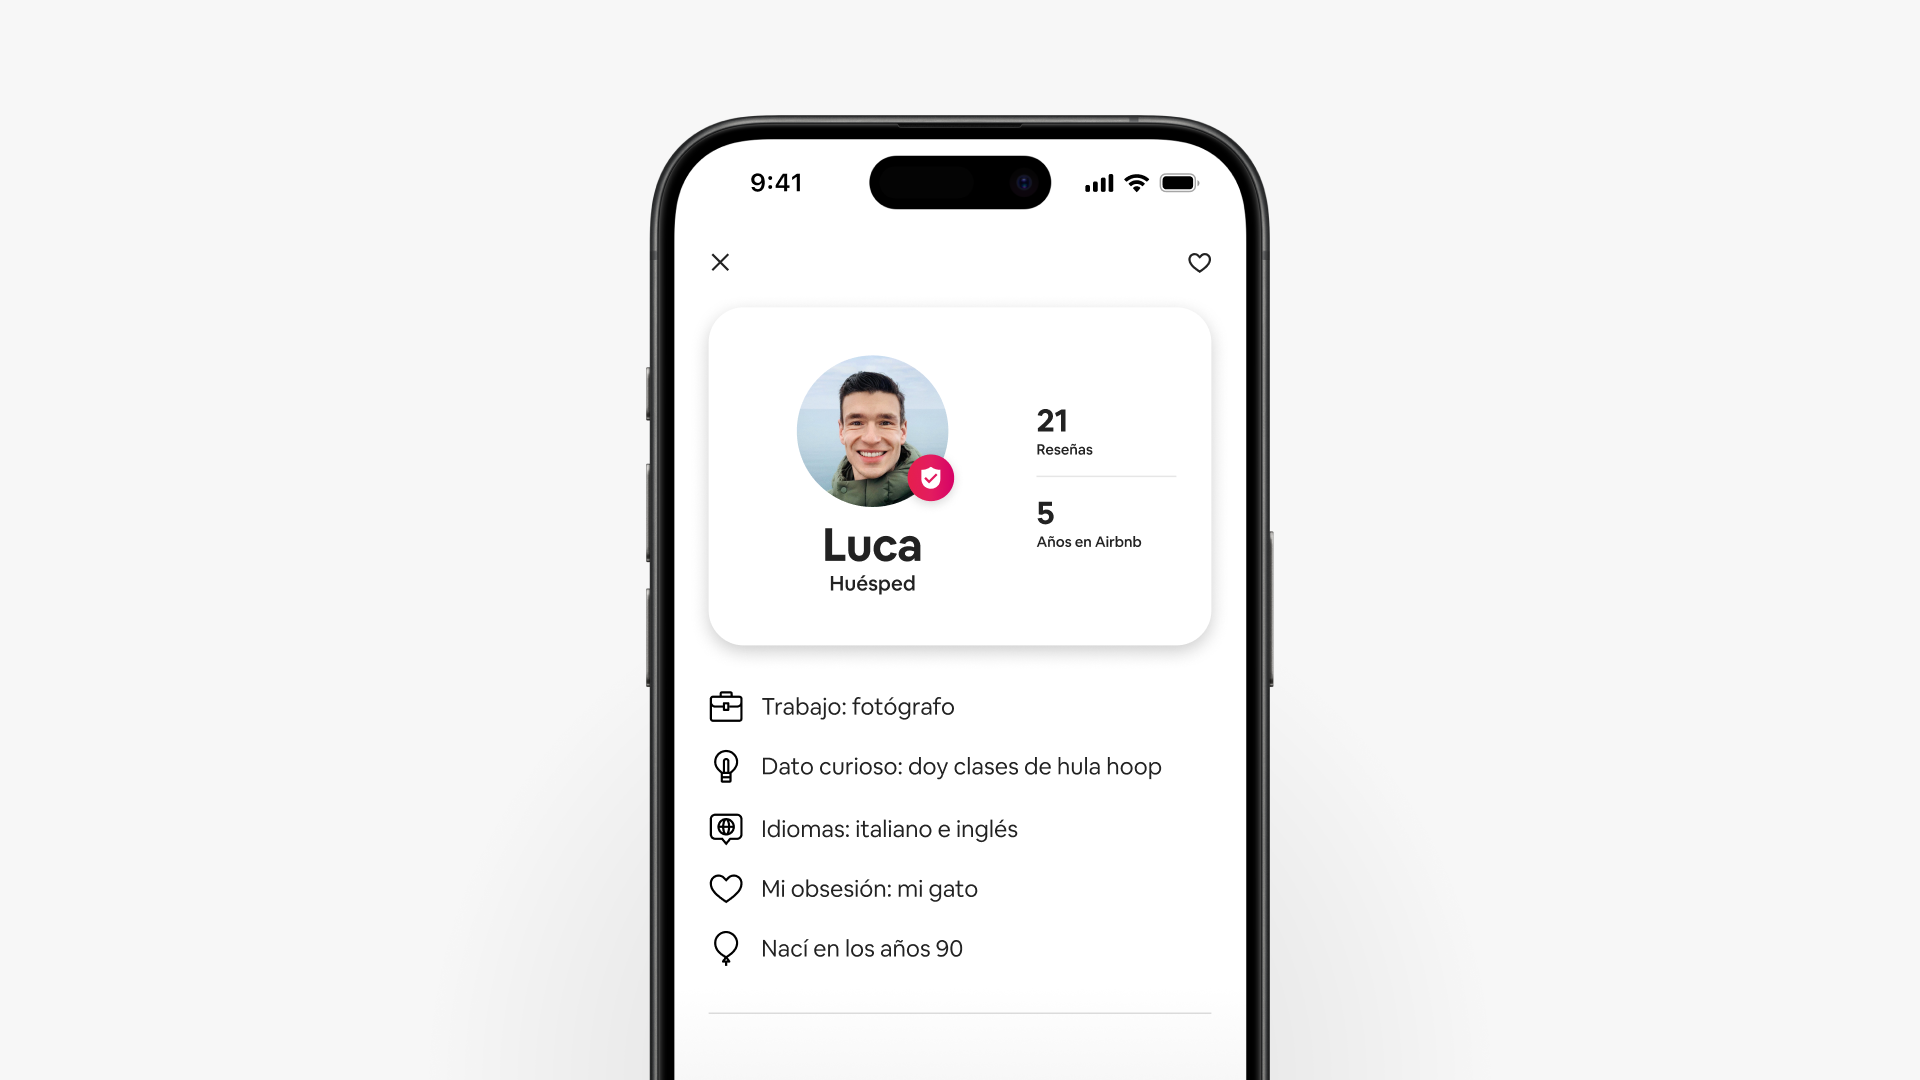 Una captura de pantalla de un smartphone muestra el perfil de huésped en Airbnb actualizado de Luca, que muestra reseñas y detalles sobre el huésped.